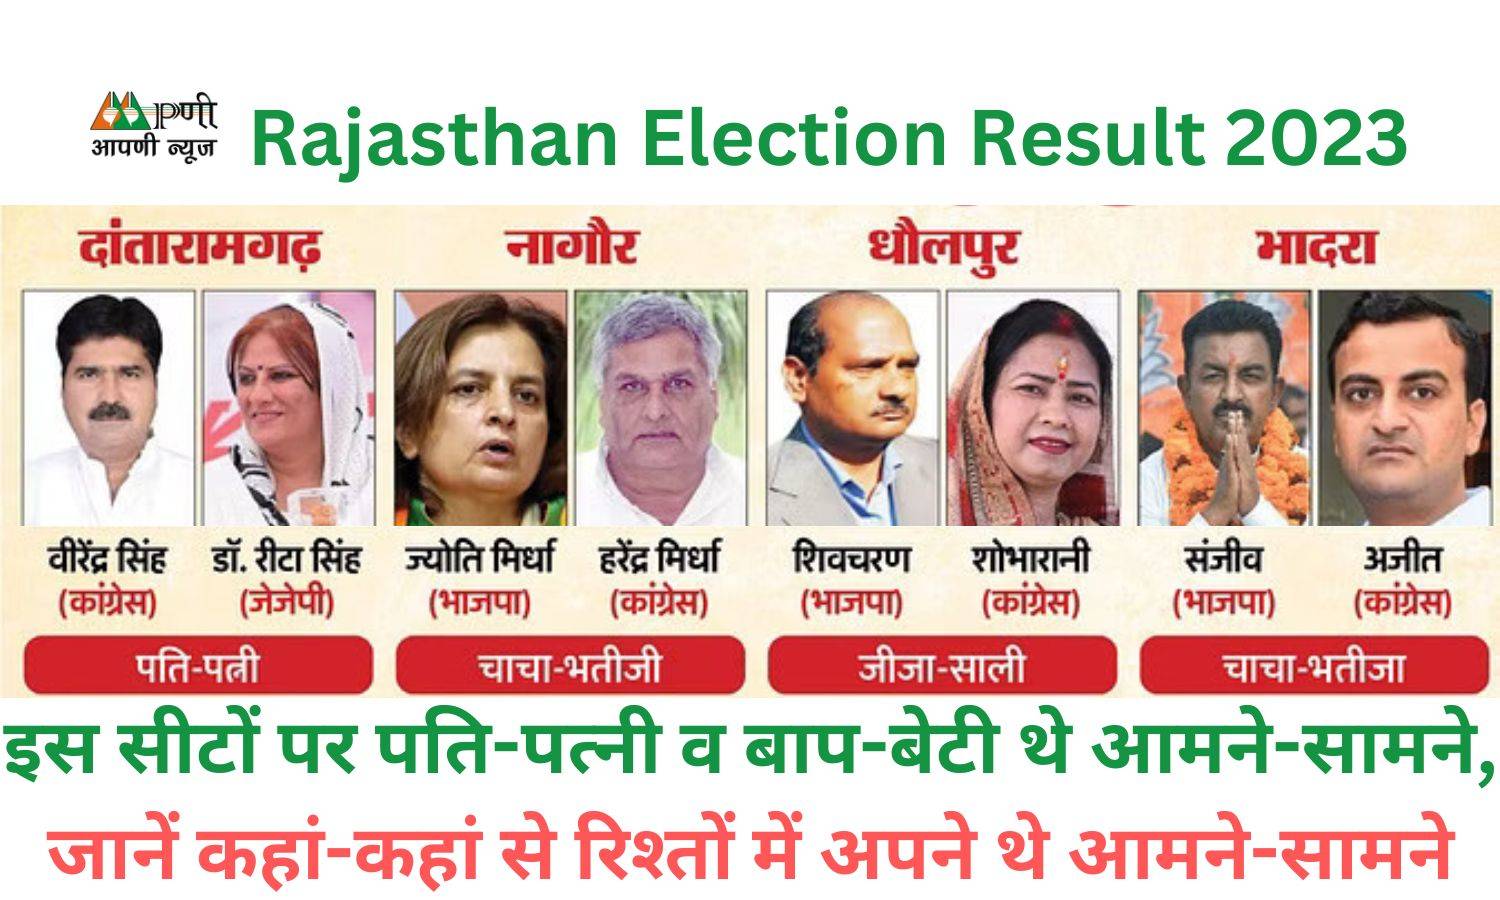 Rajasthan Election Result 2023: इस सीटों पर पति-पत्नी व बाप-बेटी थे आमने-सामने, जानें कहां-कहां से रिश्तों में अपने थे आमने-सामने